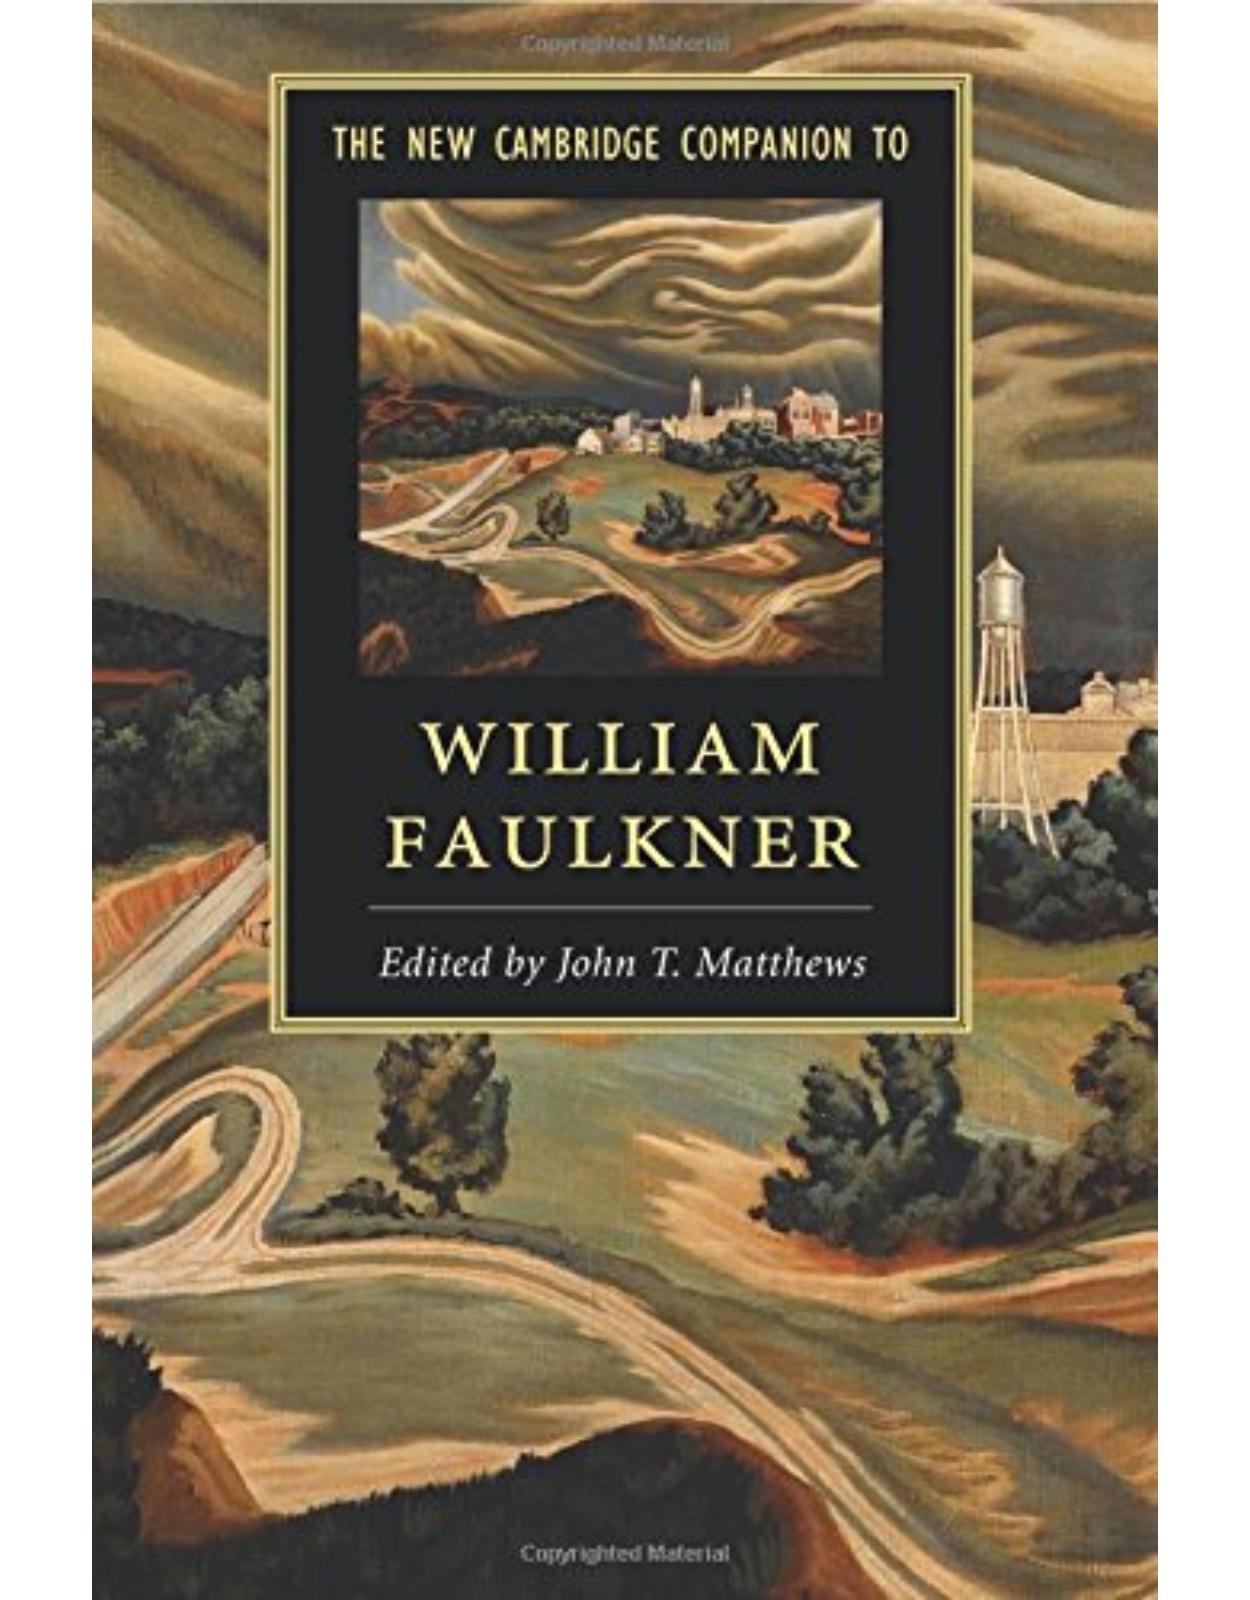 The New Cambridge Companion to William Faulkner (Cambridge Companions to Literature)